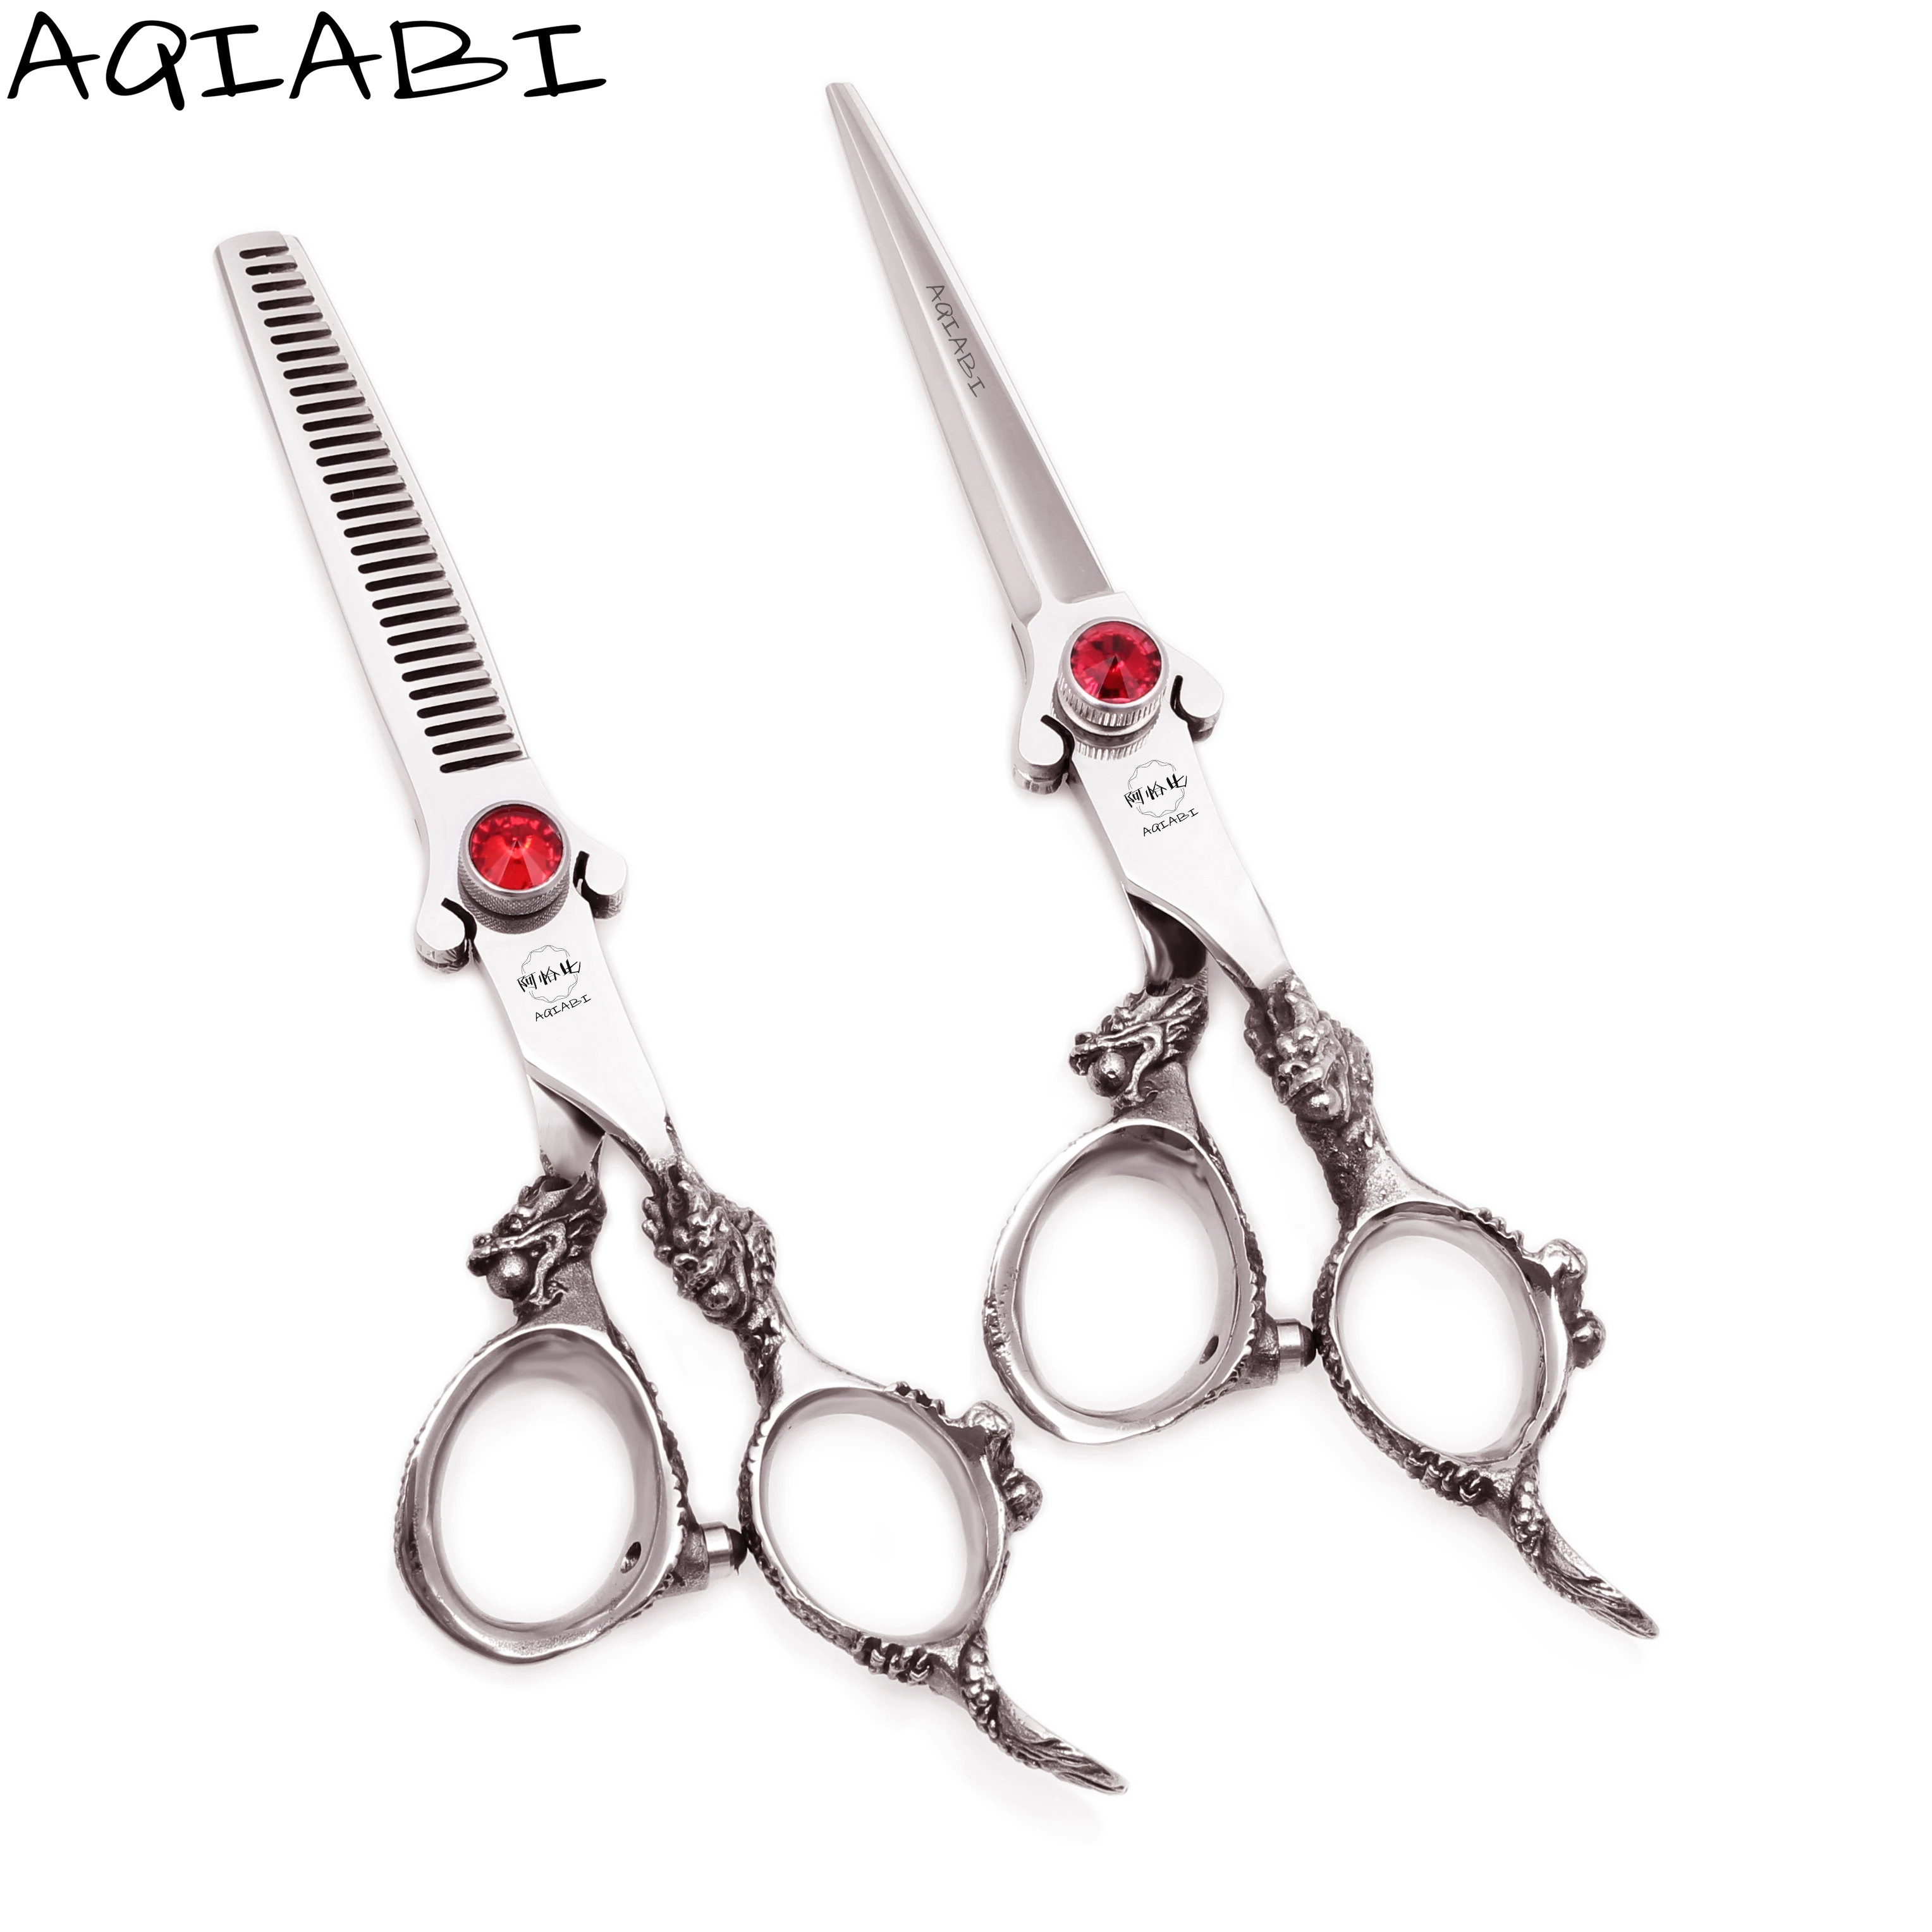 

Ножницы для стрижки волос 6 дюймов AIQABI, японские 440C стандартные ножницы, набор ножниц для стрижки волос, салонные ножницы высокого качества ...